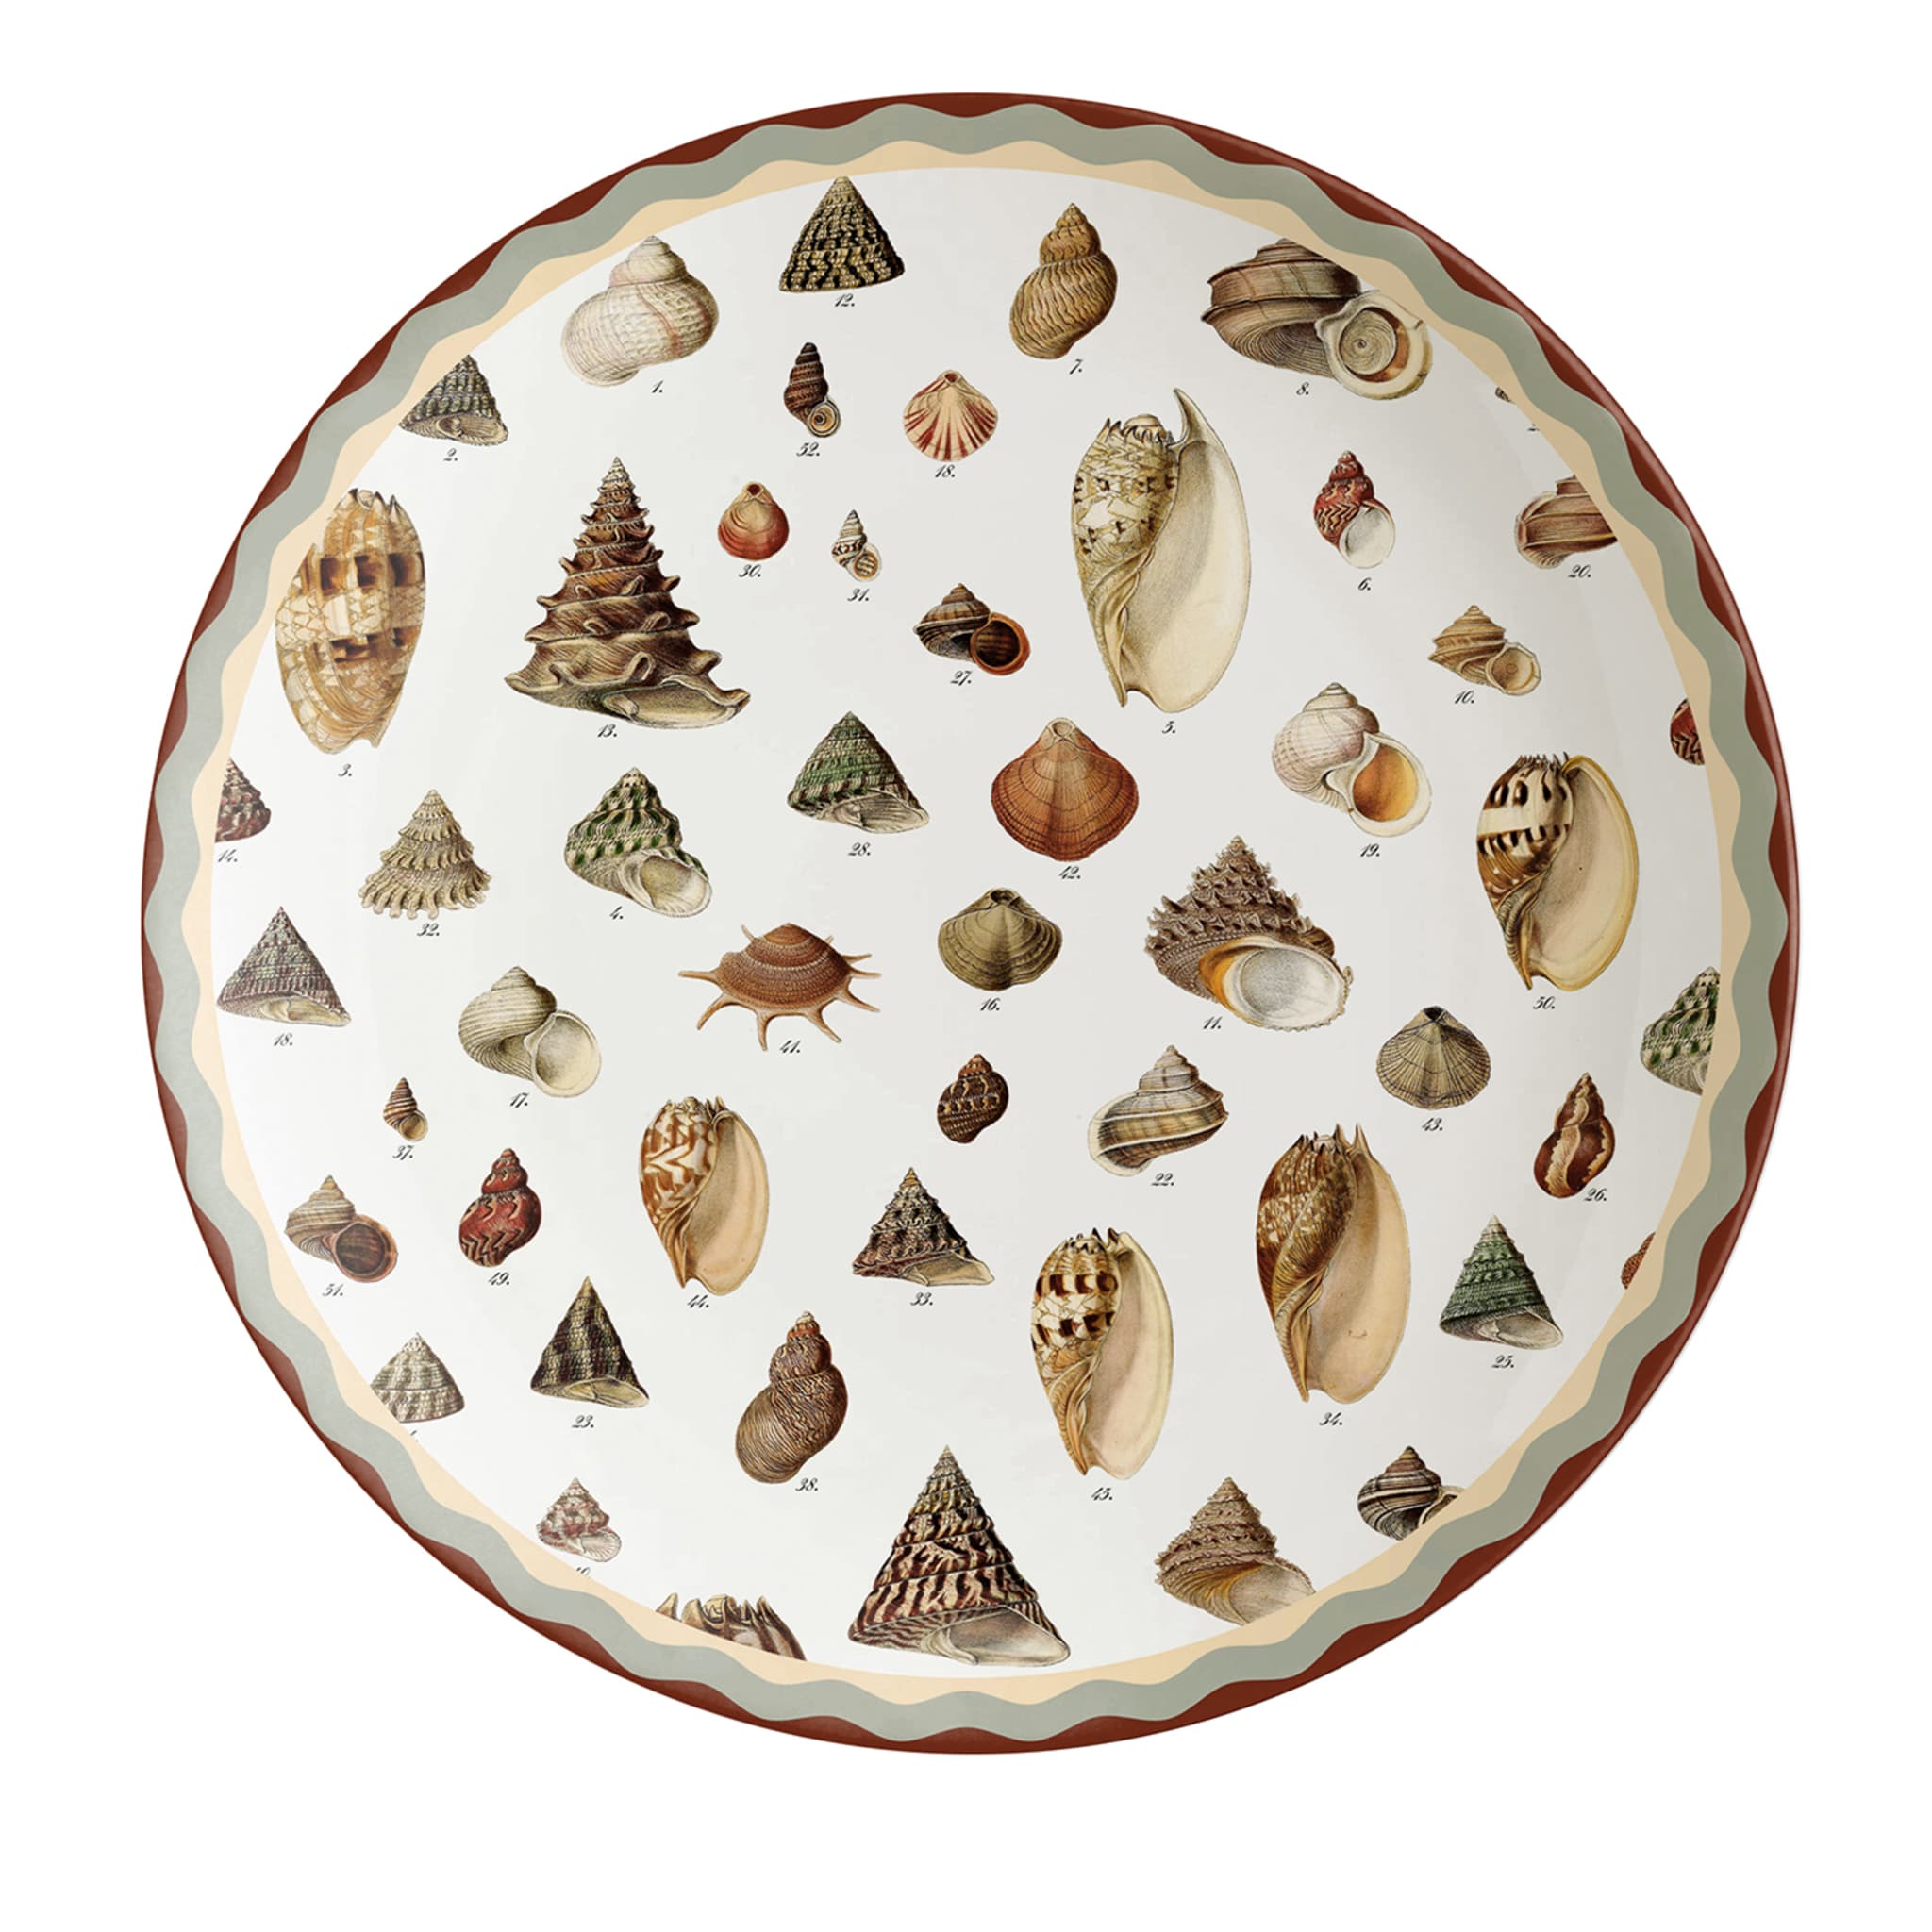 Cabinet De Curiosités Porcelain Charger Plate With Shells - Main view